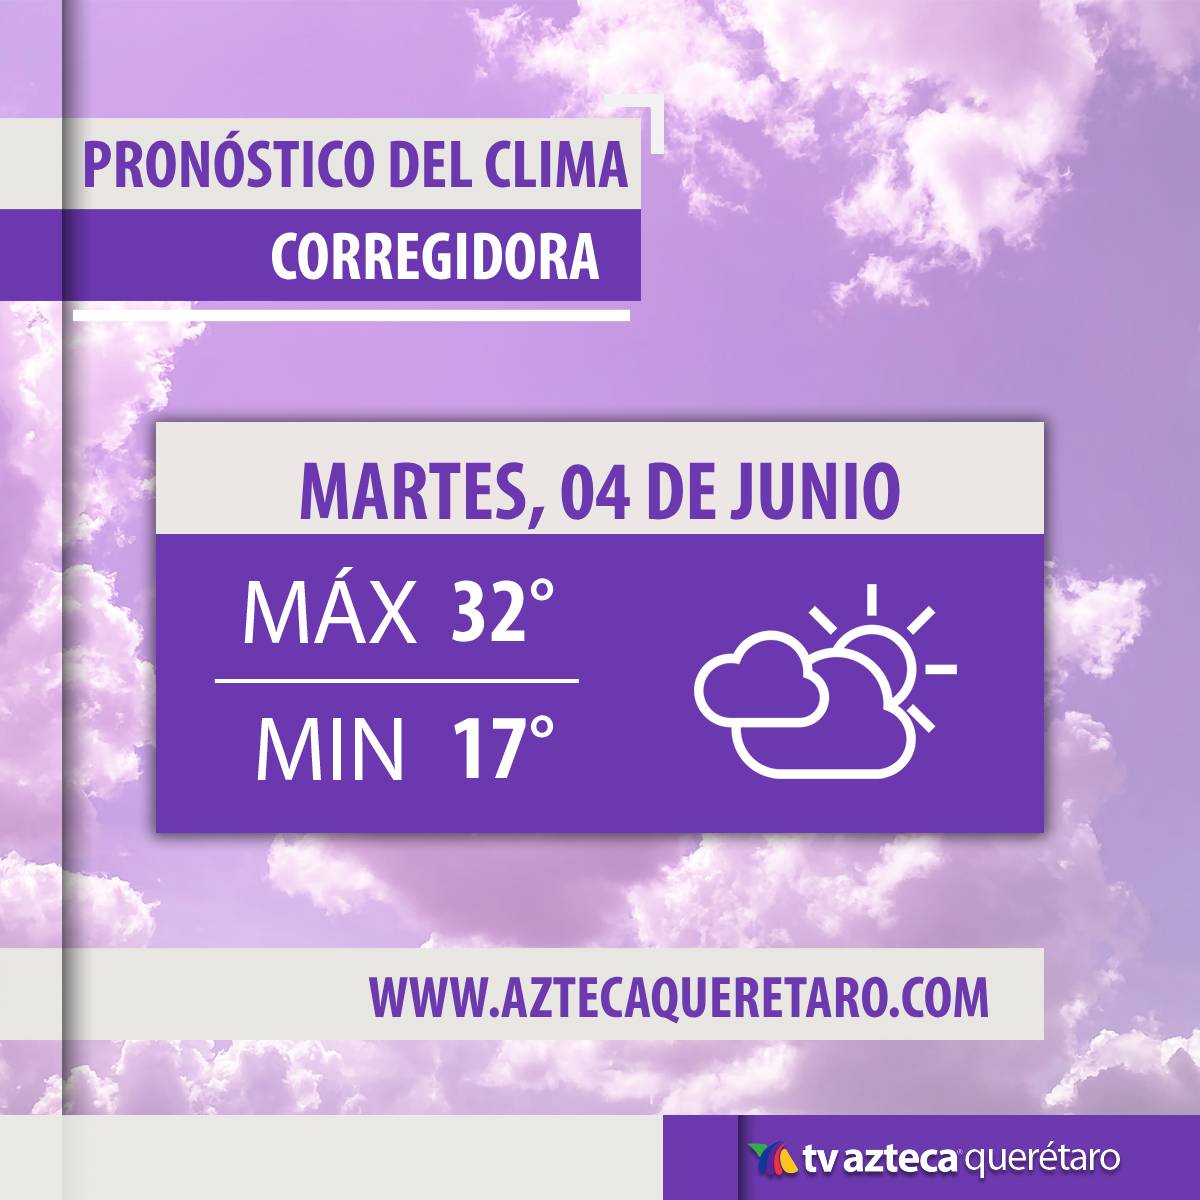 ¡Buenos días, Querétaro! ¿Cómo están este Martes 04 de Junio? 🤩🙌

Les compartimos el pronóstico del clima en Querétaro y Corregidora. 

#TvAztecaQuerétaro #ClimaHoy